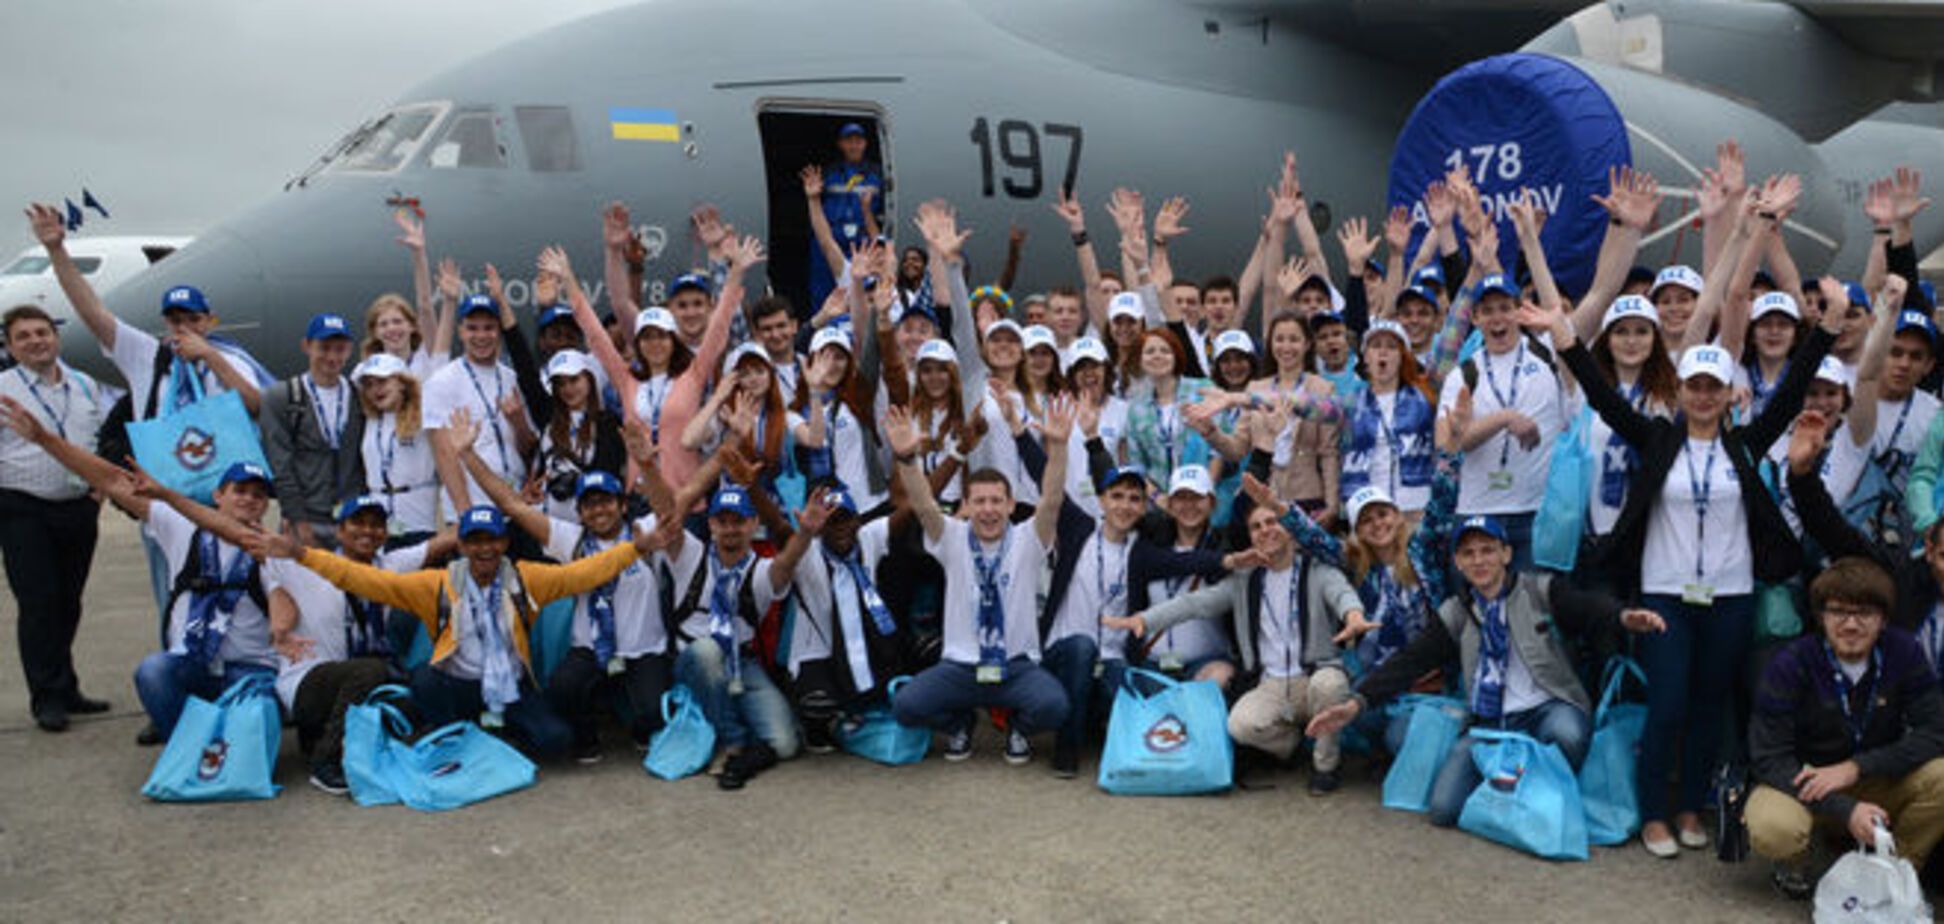 Мне бы в небо: украинские студенты прикоснулись к будущему авиации в Ле Бурже